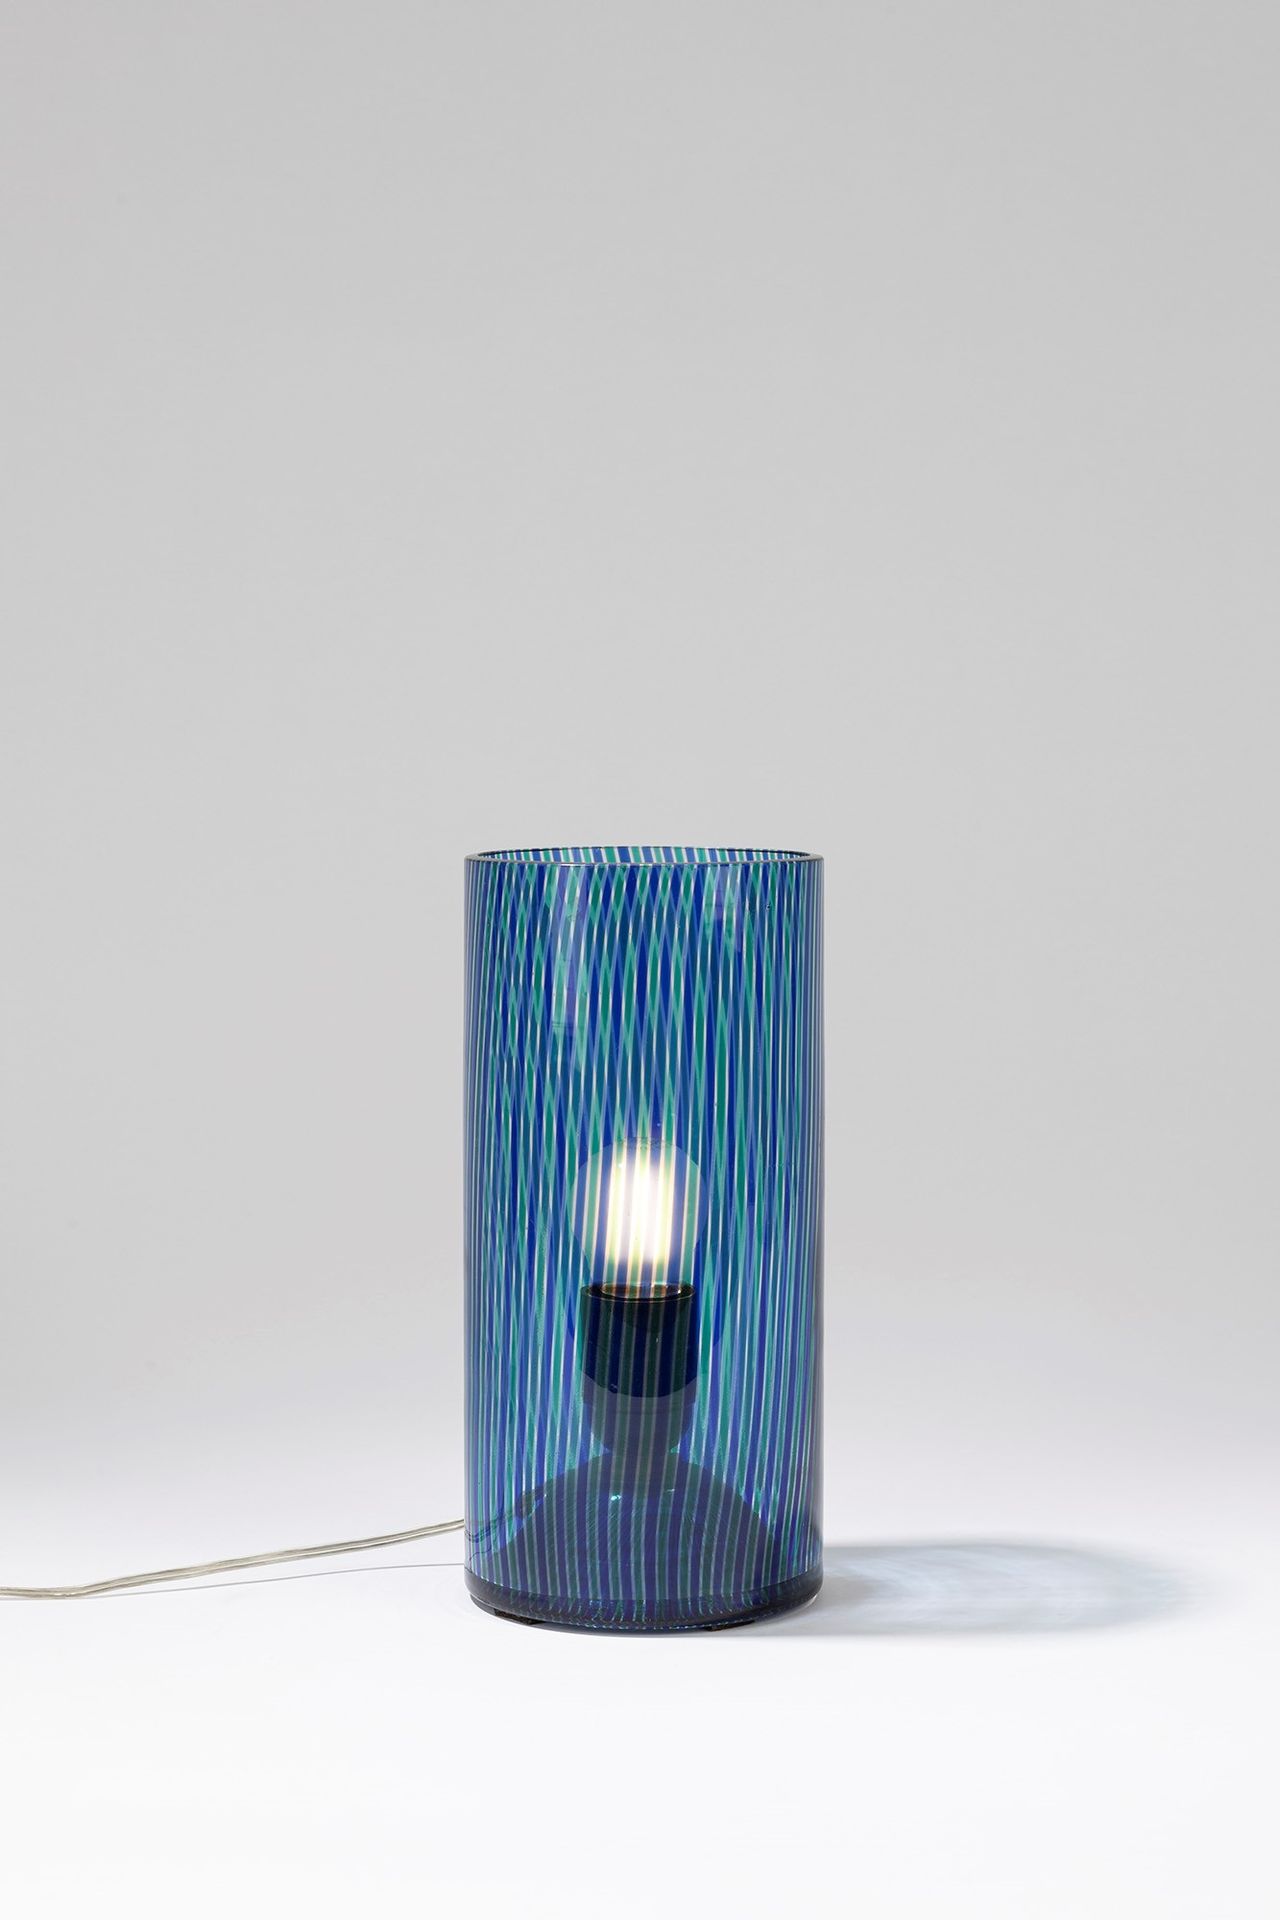 ITALIAN MANUFACTURE Lampe de table, période 60's

dm 11.5 cm h 24 cm
corps cylin&hellip;